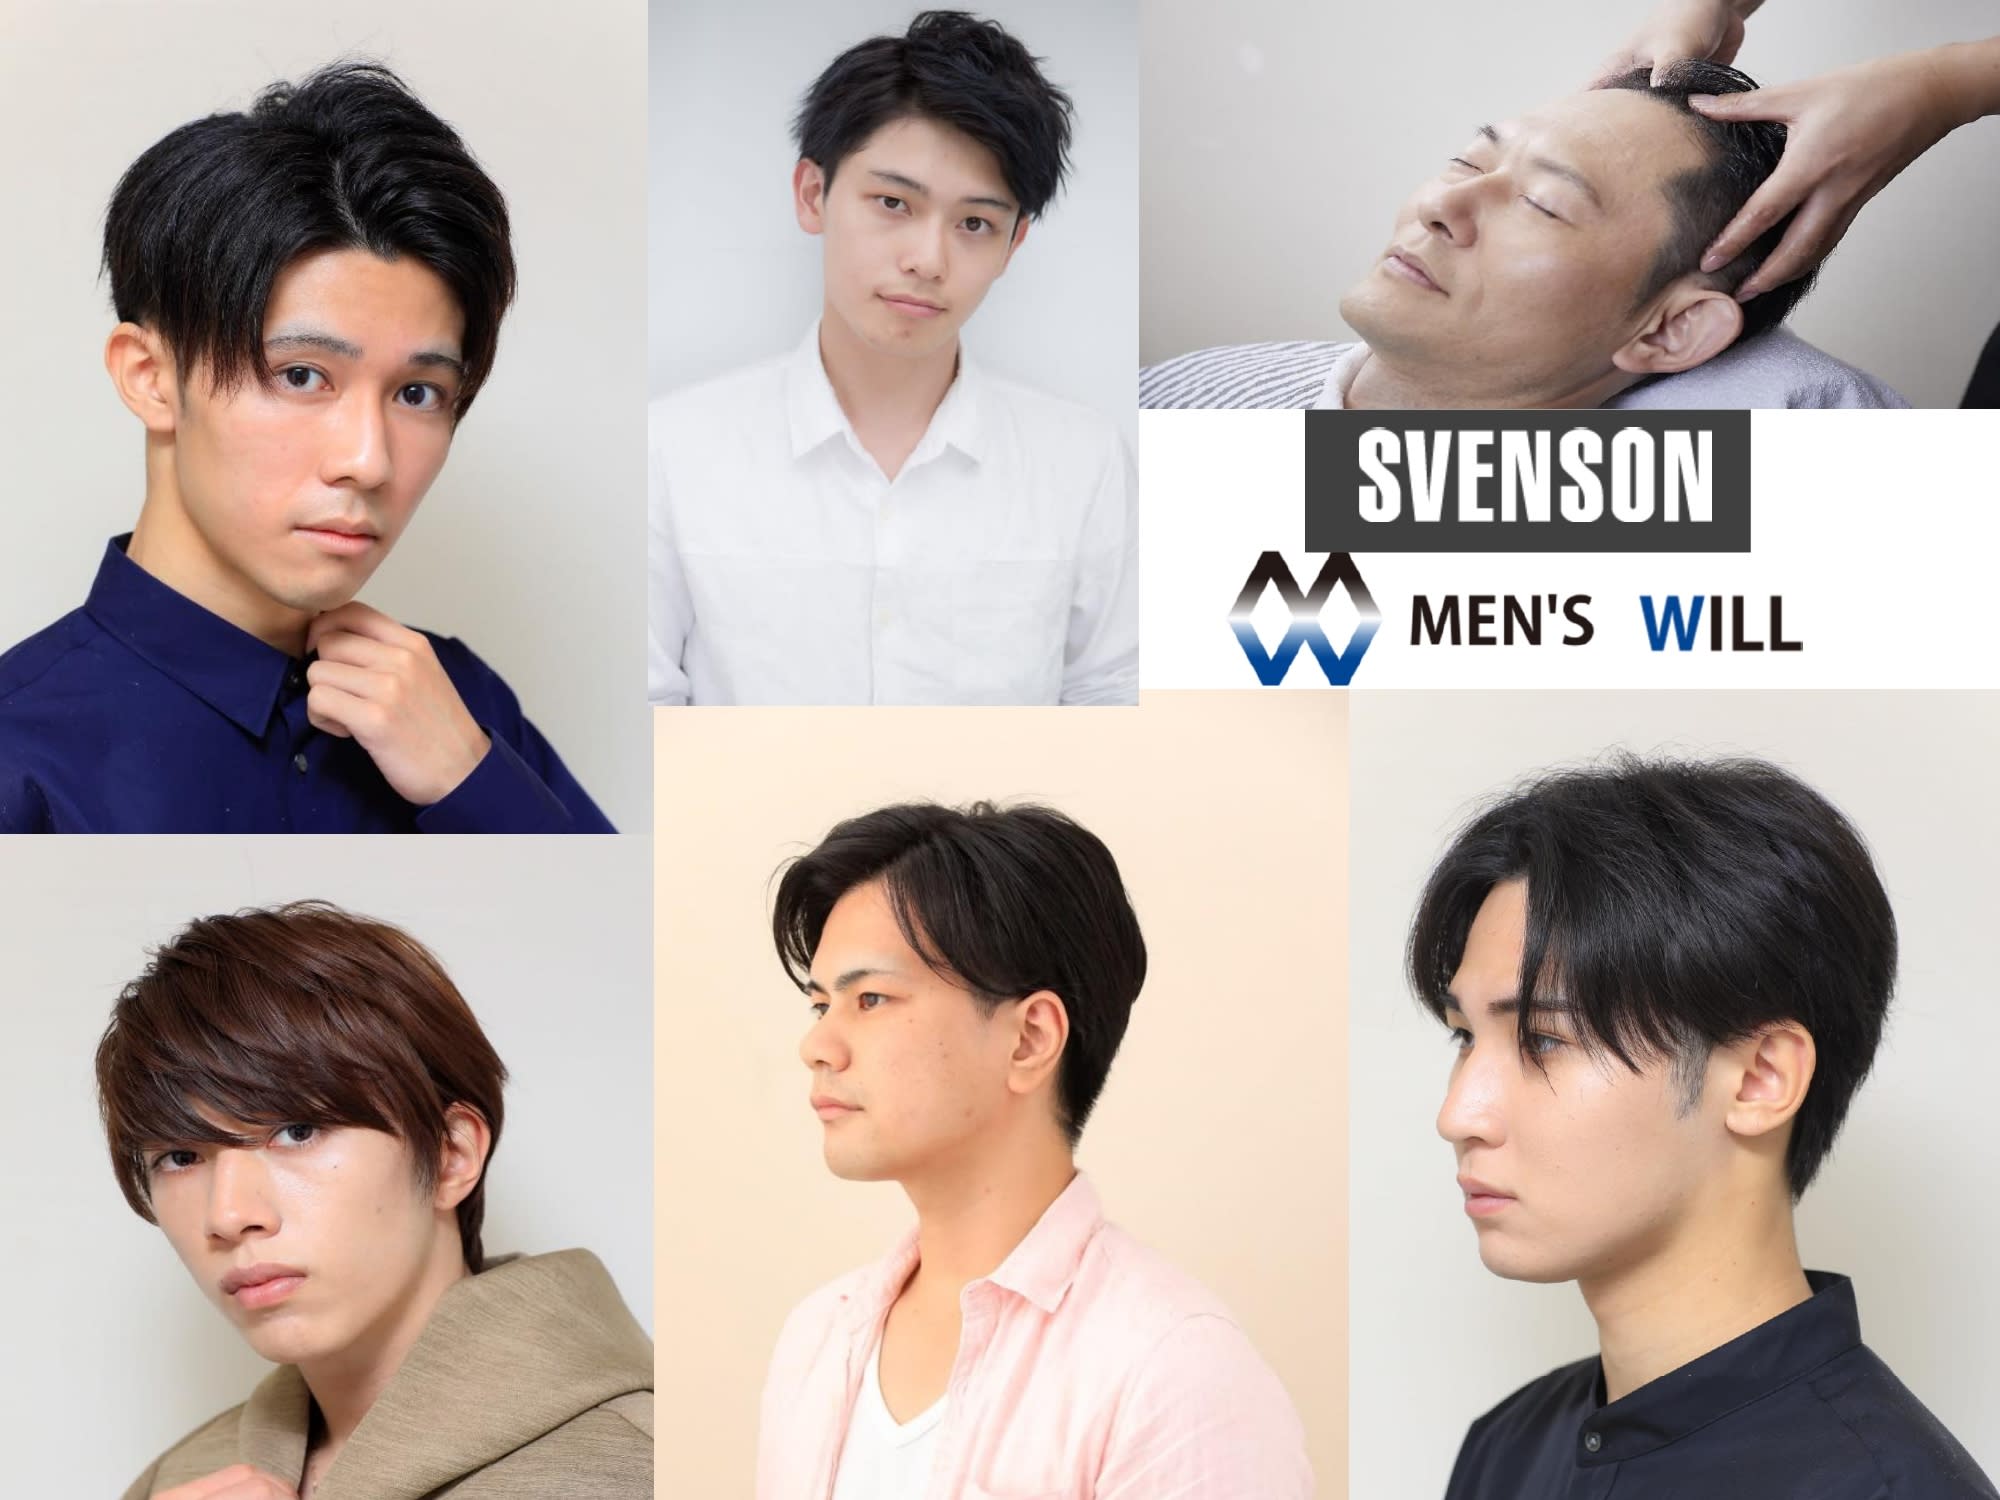 MEN'S WILL by SVENSON 静岡スタジオのアイキャッチ画像